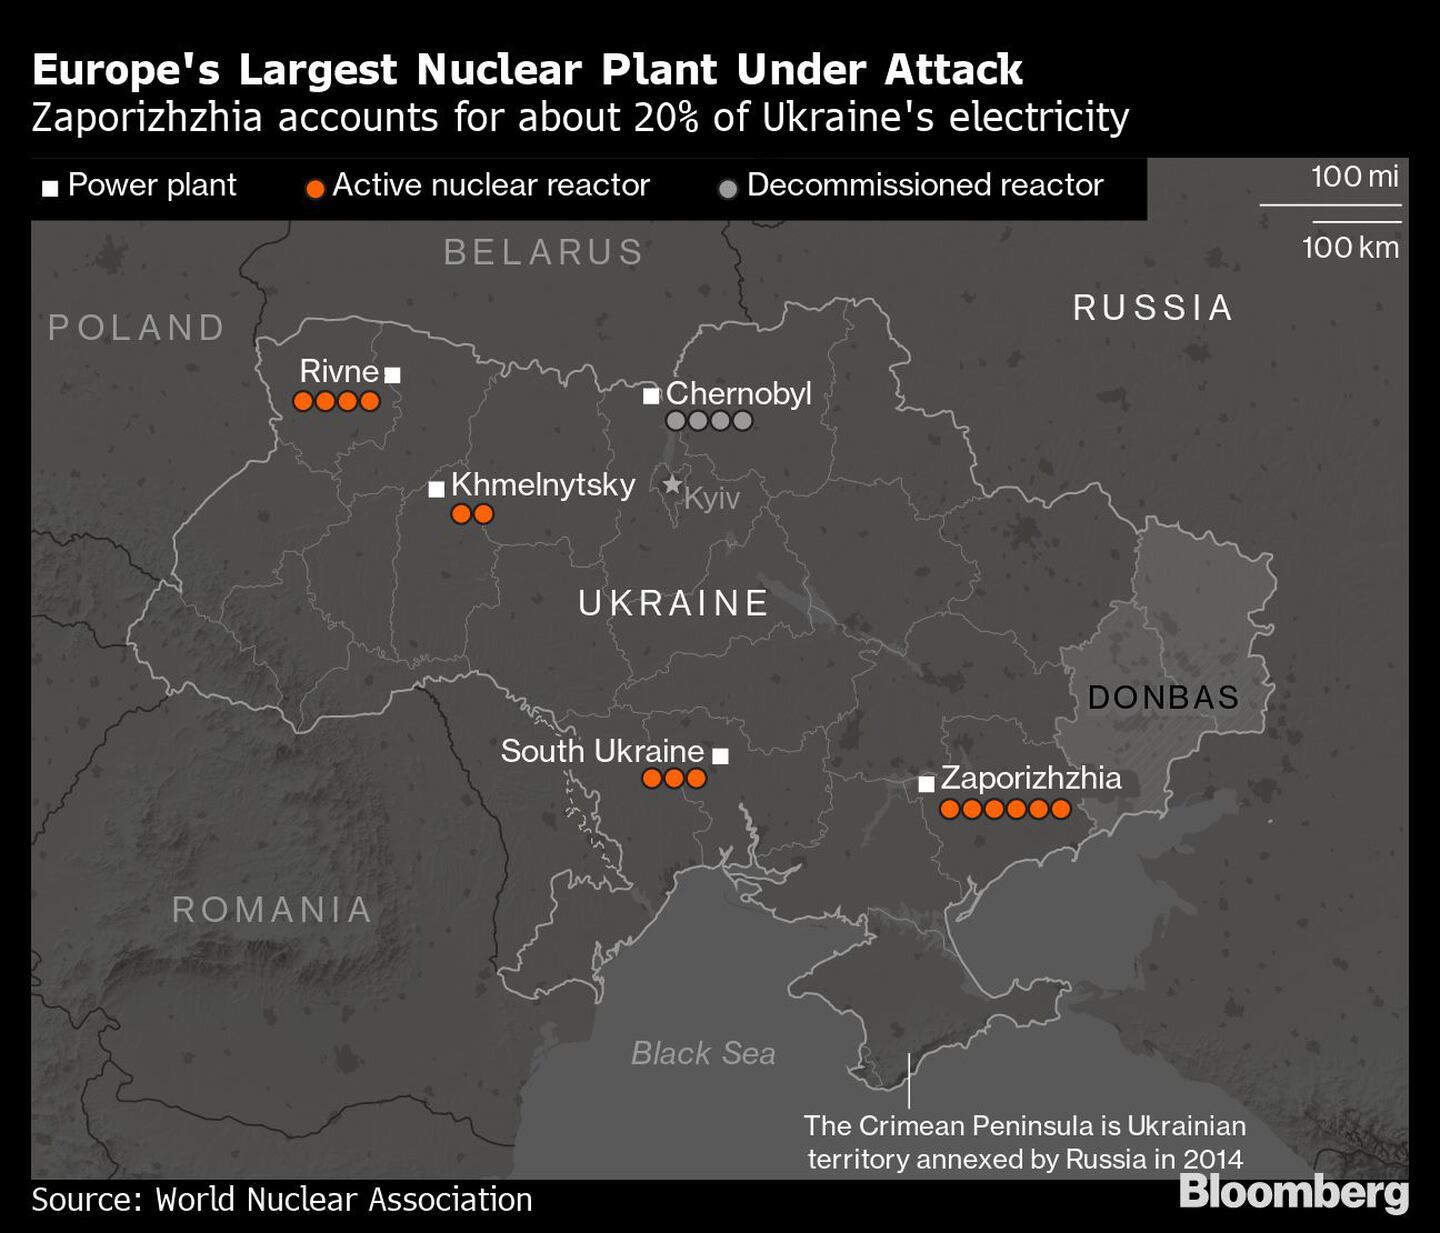 La mayor central nuclear de Europa, bajo ataque
Zaporizhzhia representa el 20% de la electricidad de Ucrania
Blanco: Planta de energía
Naranja: Reactor nuclear activo
Gris: Reactor desmantelado
La península de Crimea es territorio ucraniano anexionado por Rusia en 2014dfd